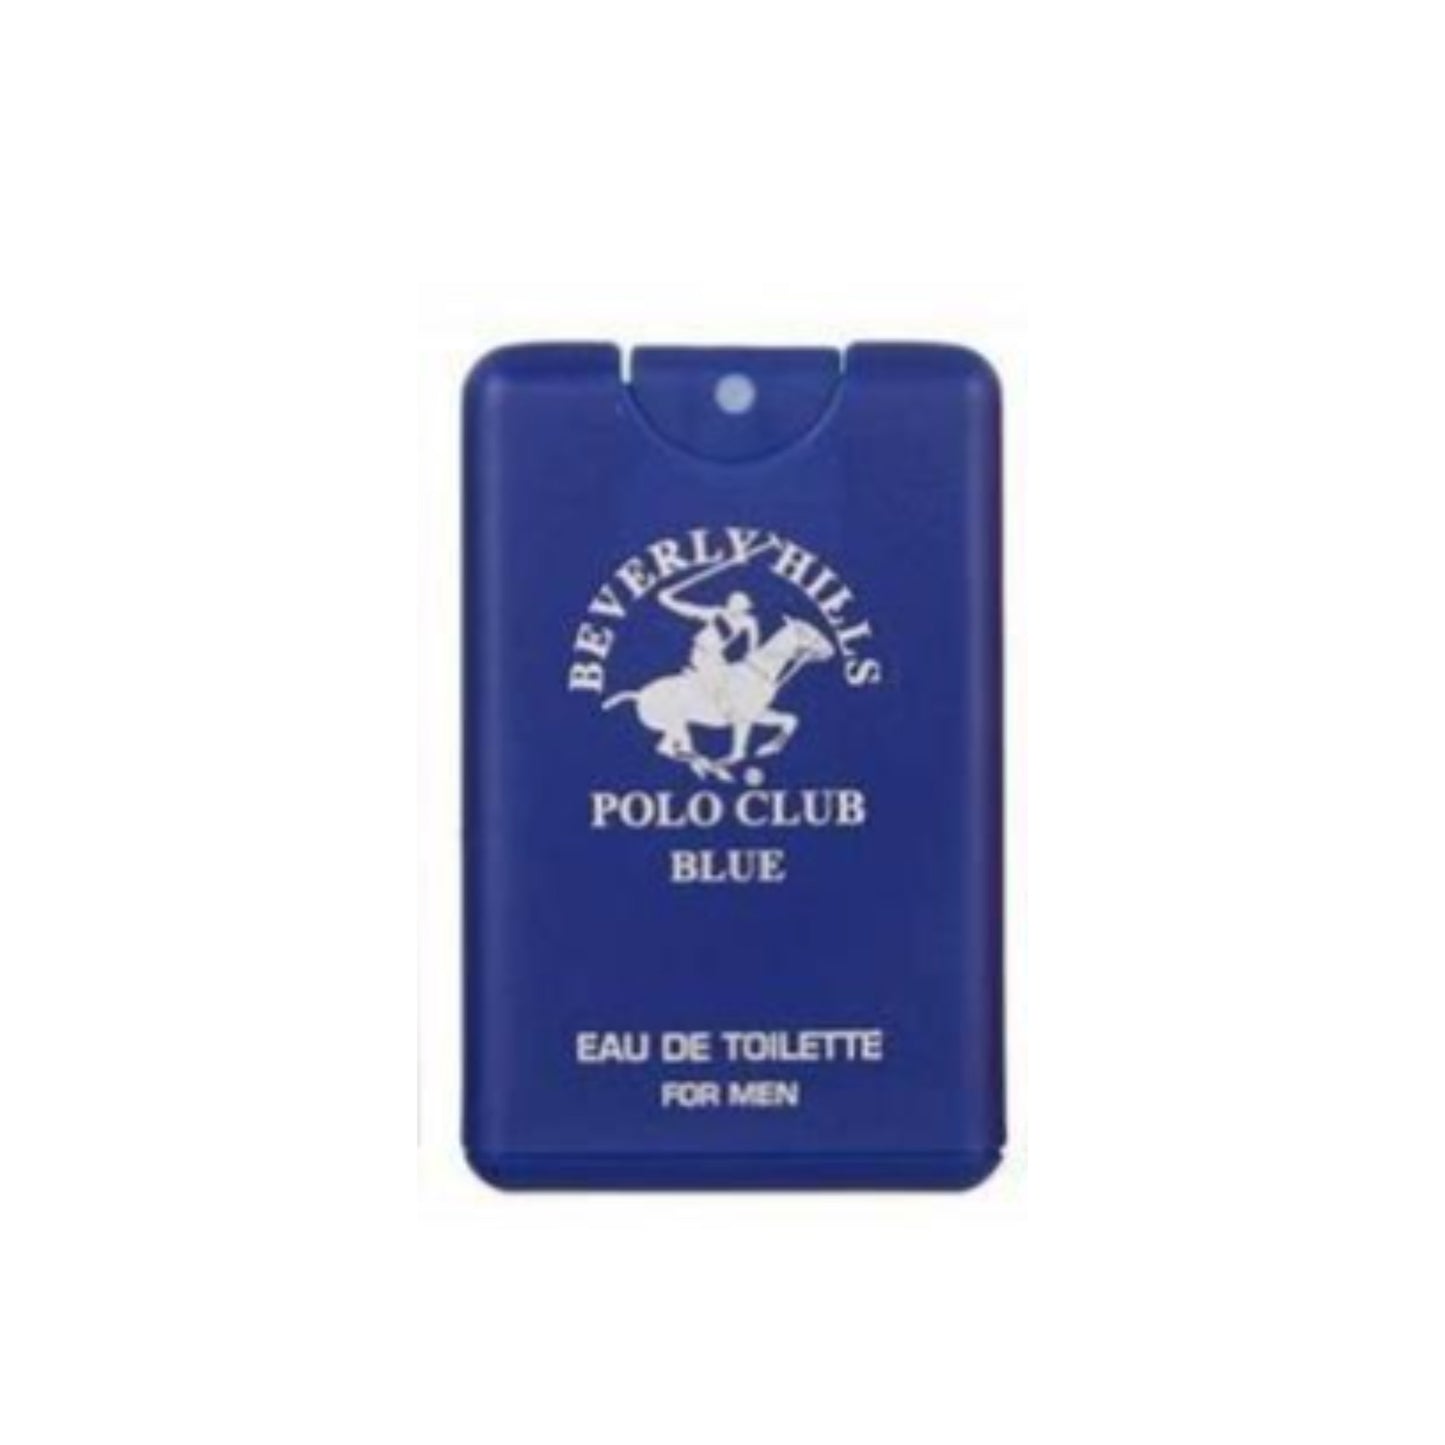 Polo Club Blue 1.7 + Pocket Spray